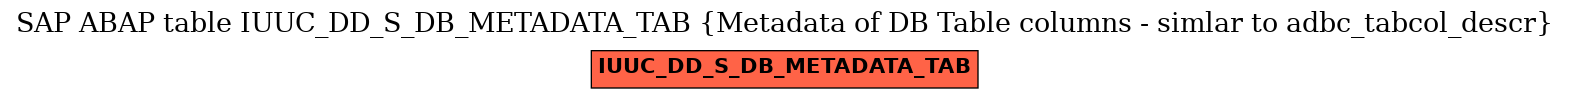 E-R Diagram for table IUUC_DD_S_DB_METADATA_TAB (Metadata of DB Table columns - simlar to adbc_tabcol_descr)